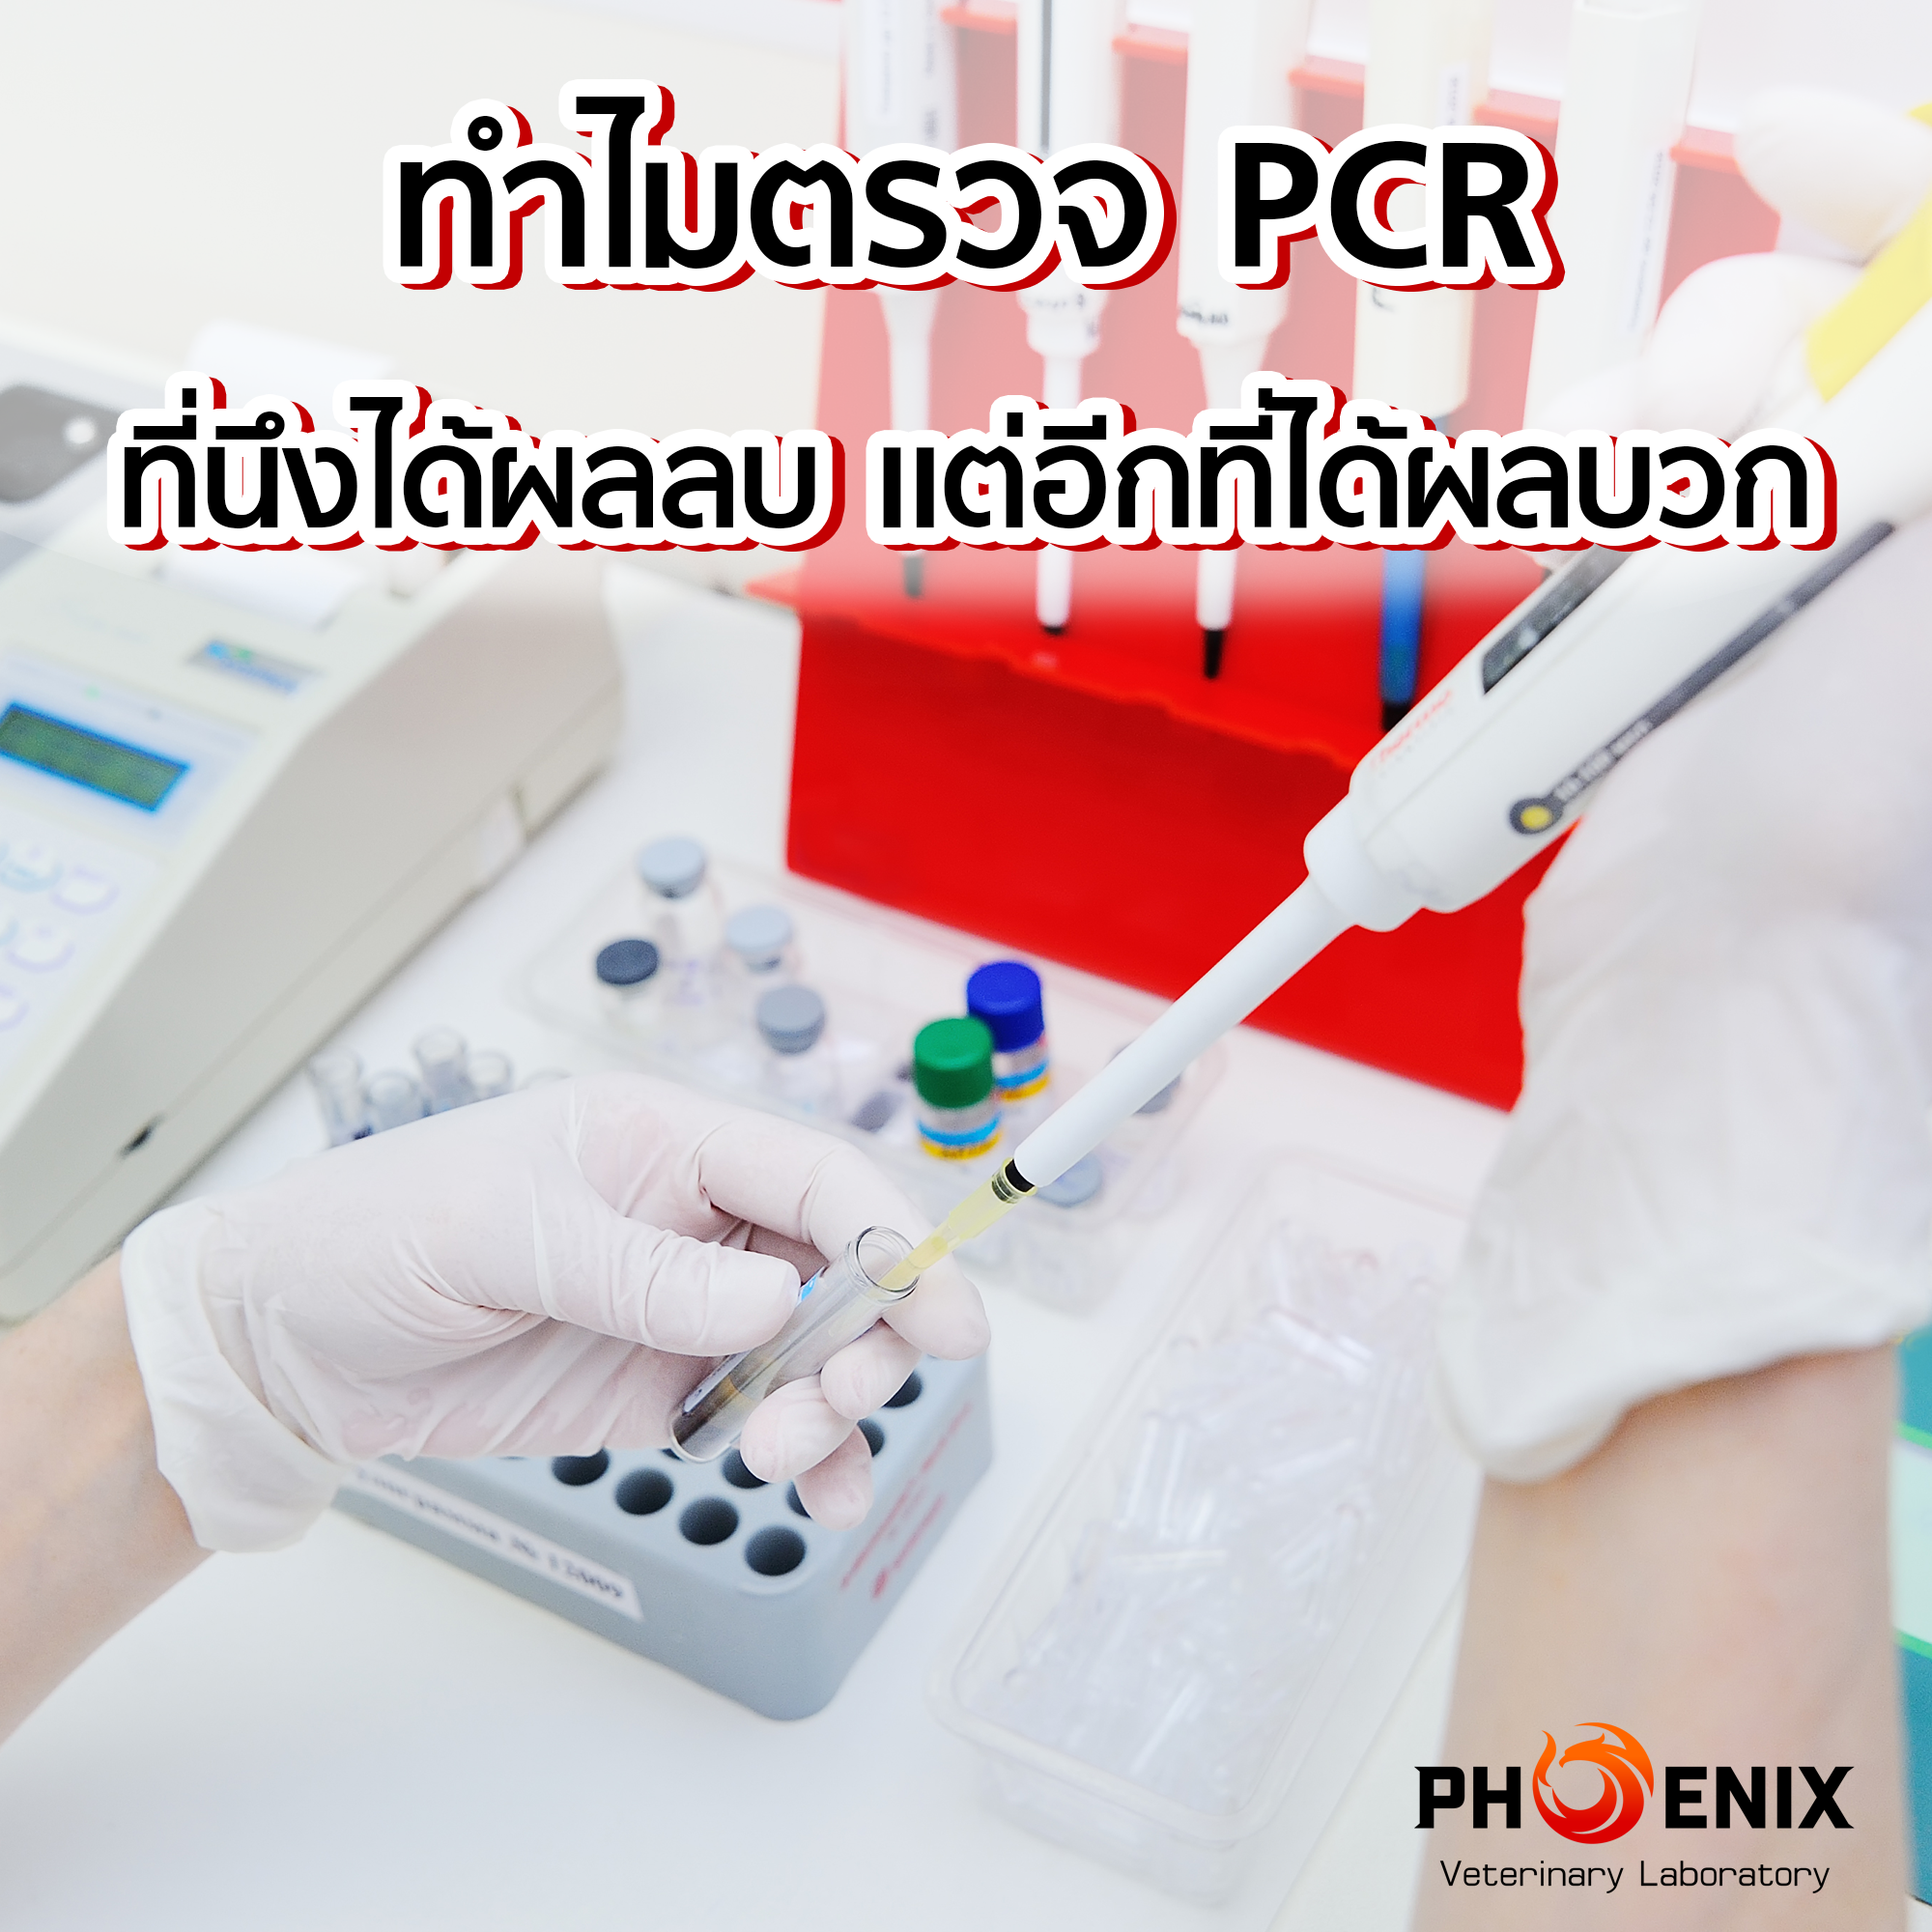 ทำไมตรวจ PCR ที่นึงได้ผลลบ แต่อีกที่ได้ผลบวก ??